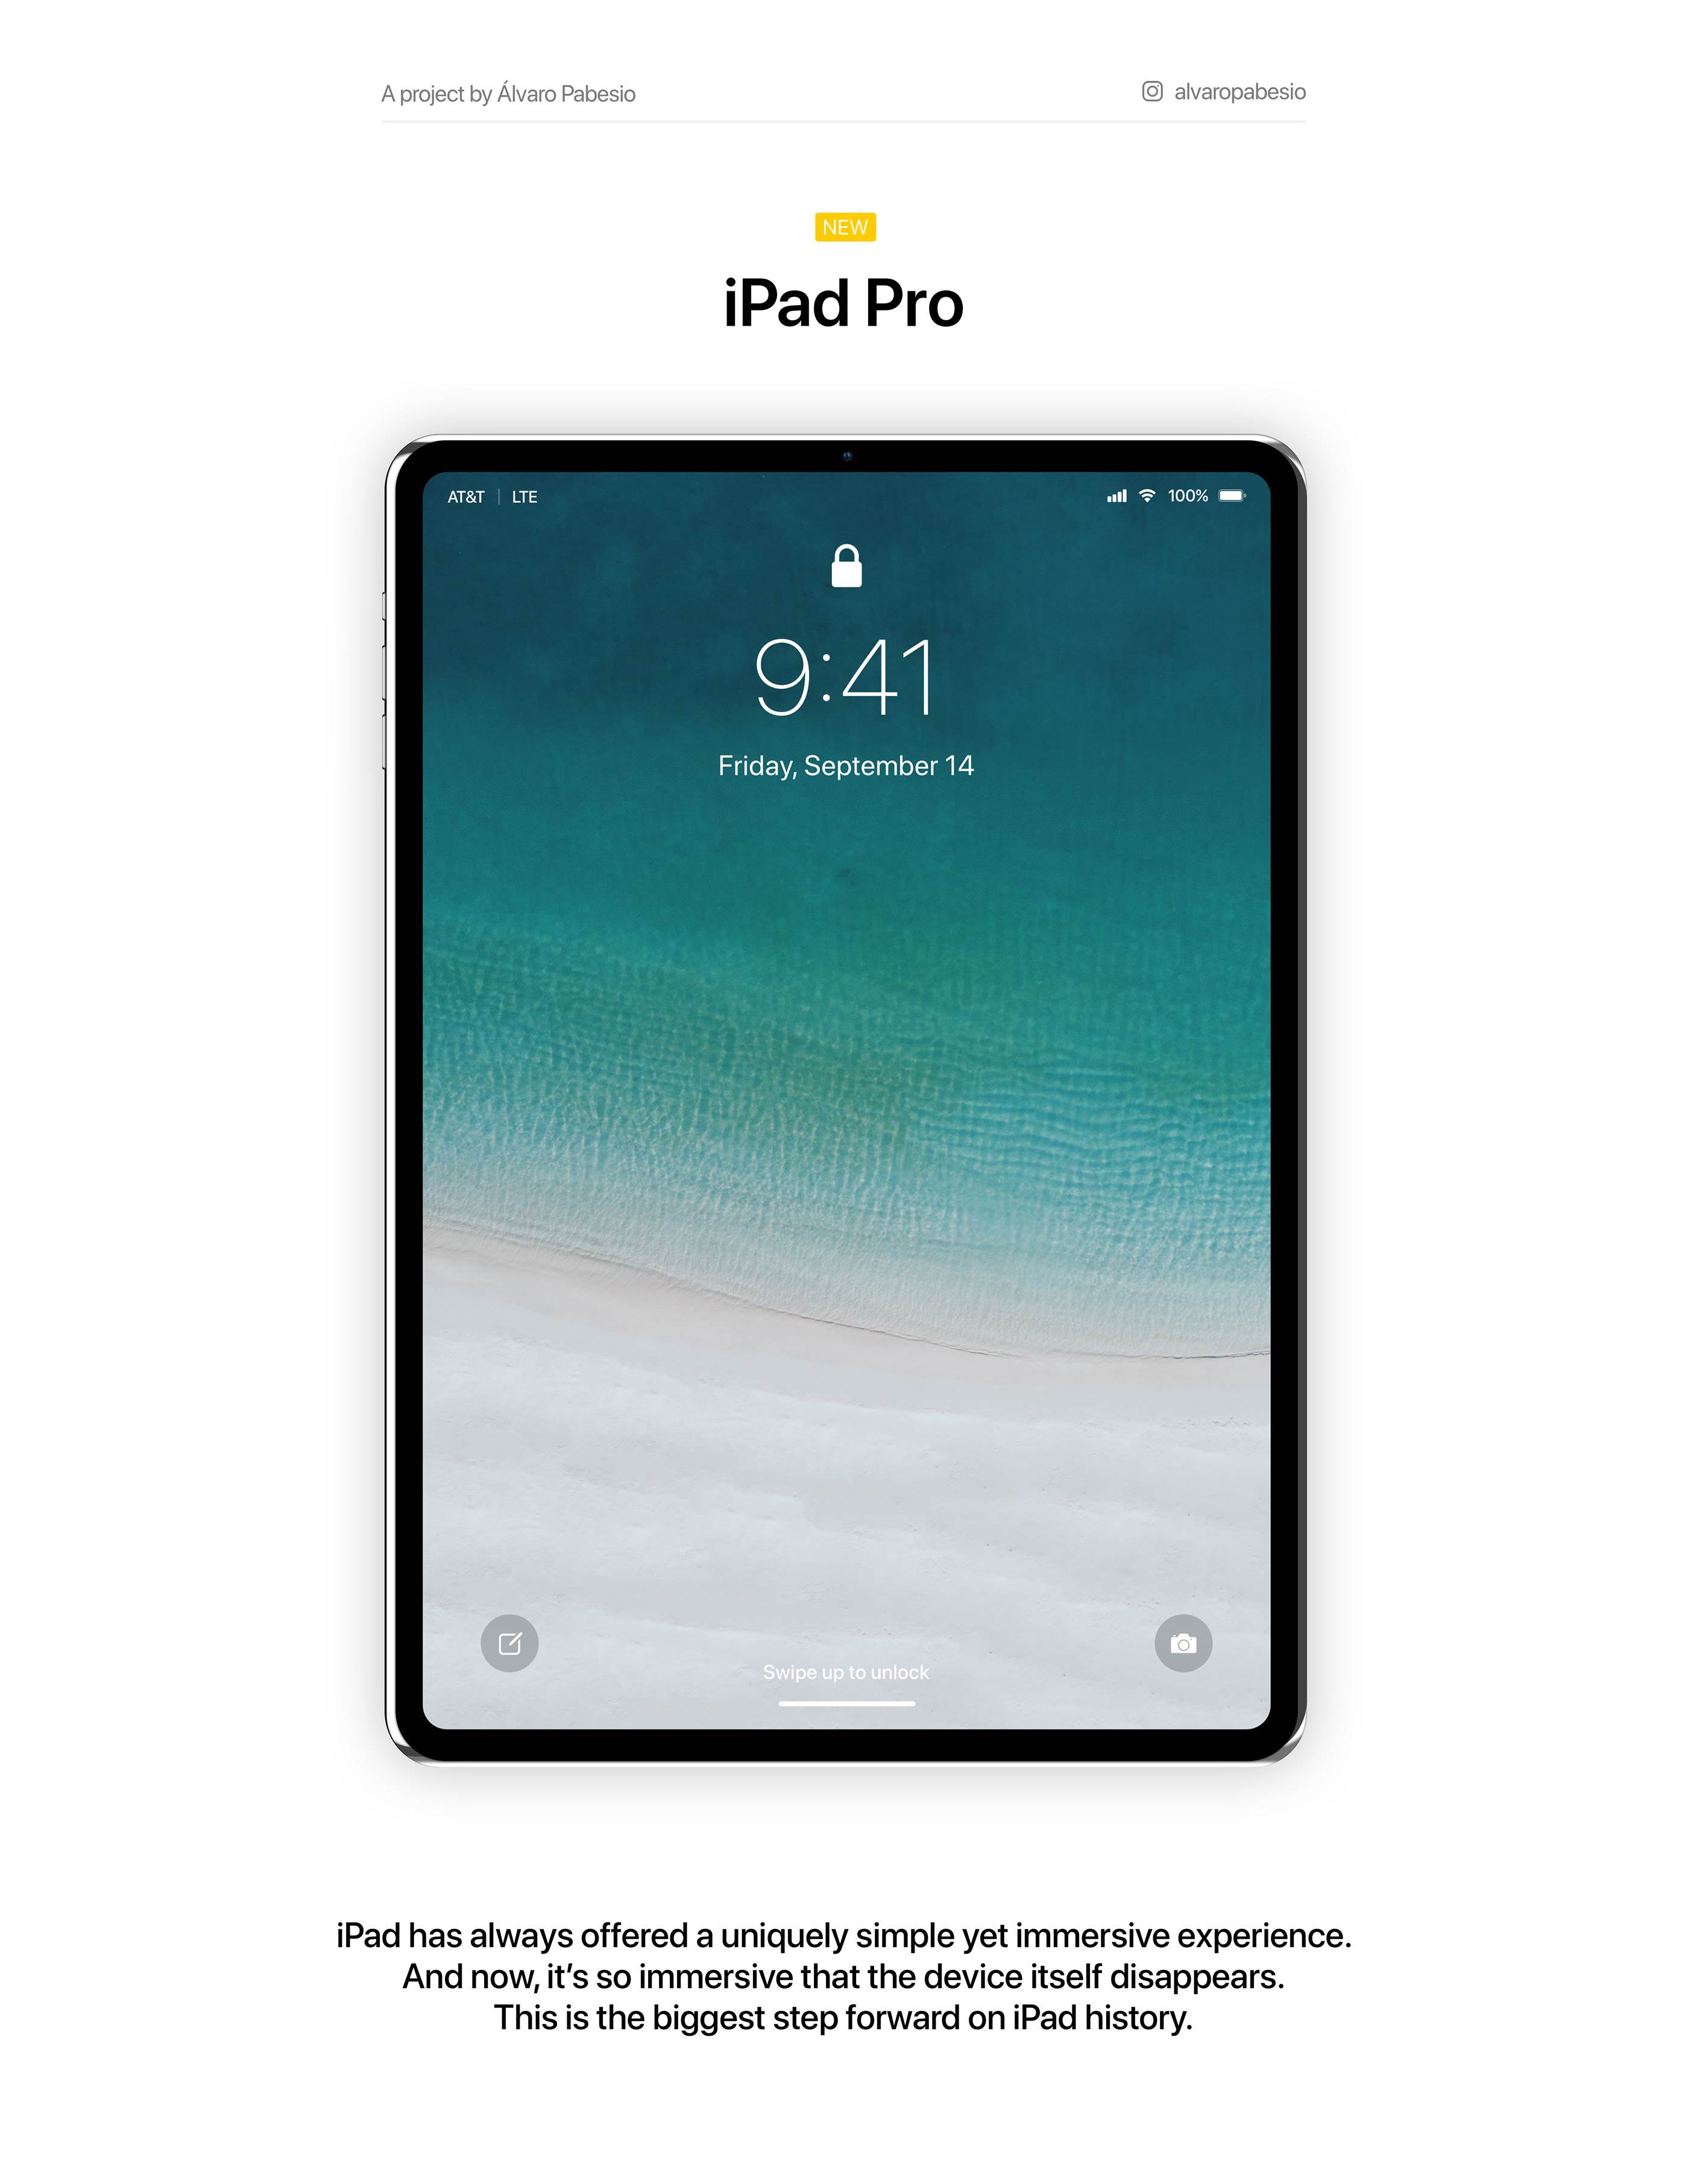 Najpierw iPhone, a teraz iPad Pro zostanie bez gniazda słuchawkowego polecane, ciekawostki iPad Pro bez gniazda słuchawkowego, iPad Pro 2018, Apple  Od stycznia tego roku używam iPhone'a 7 i nie doskwiera mi brak standardowego gniazda słuchawkowego, choć znajdą się przeciwnicy tego rozwiązania. iPad 2